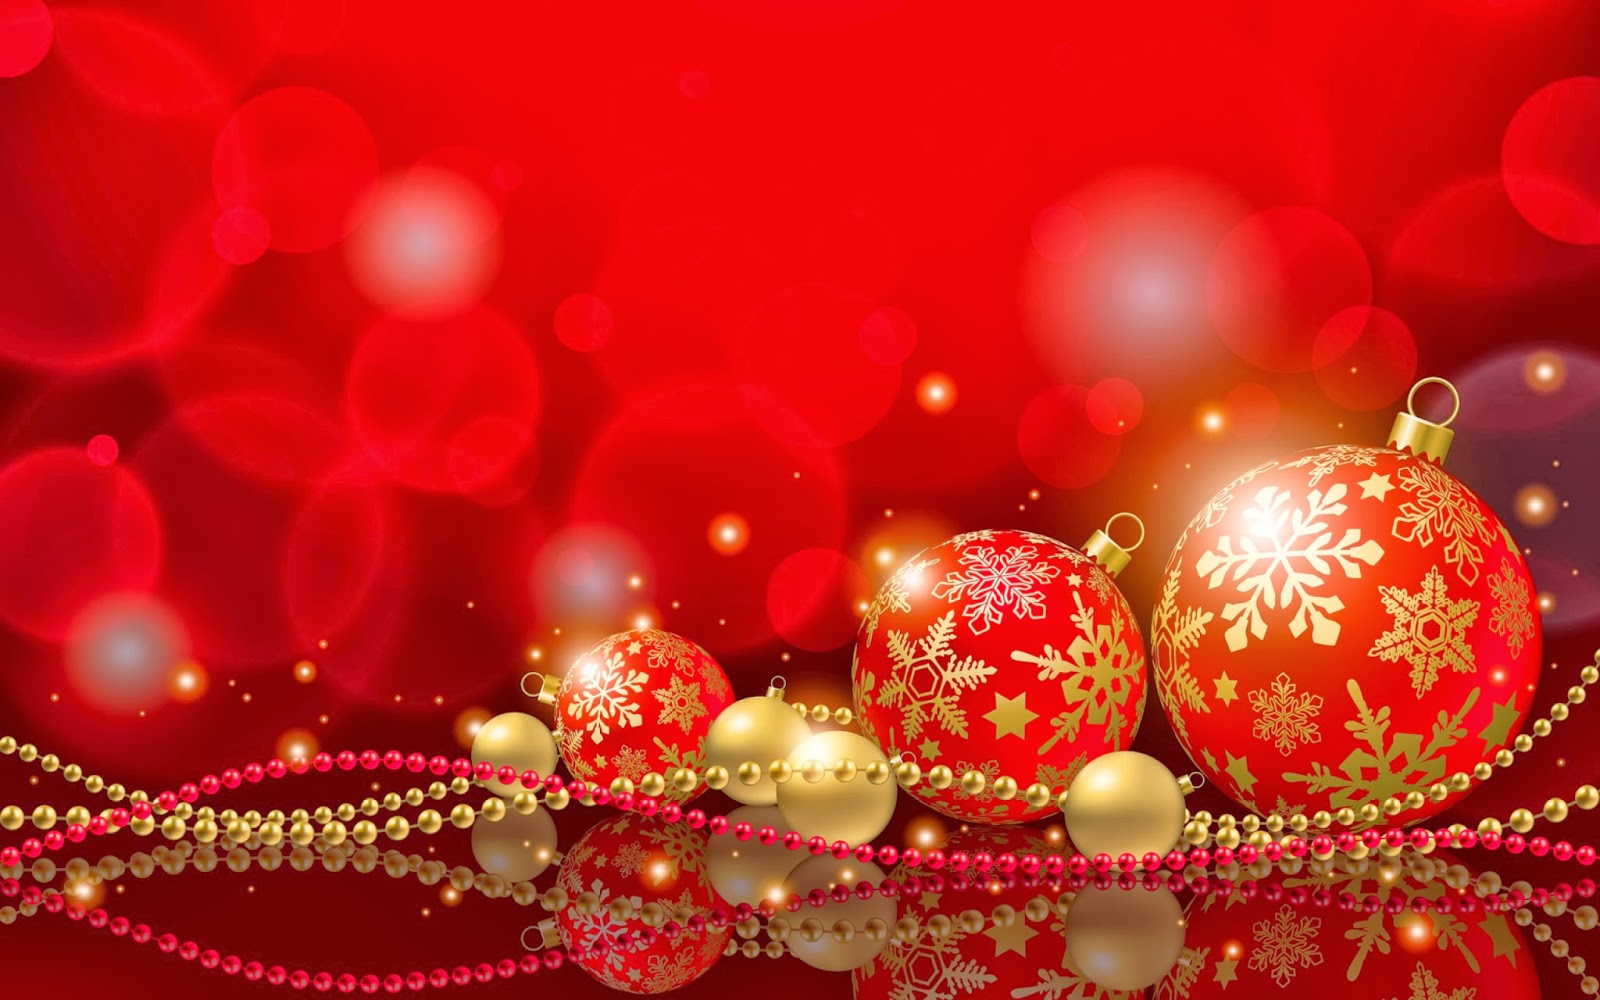 Ravishment: Merry Christmas Ornaments and Christmas Balls HD Wallpapers